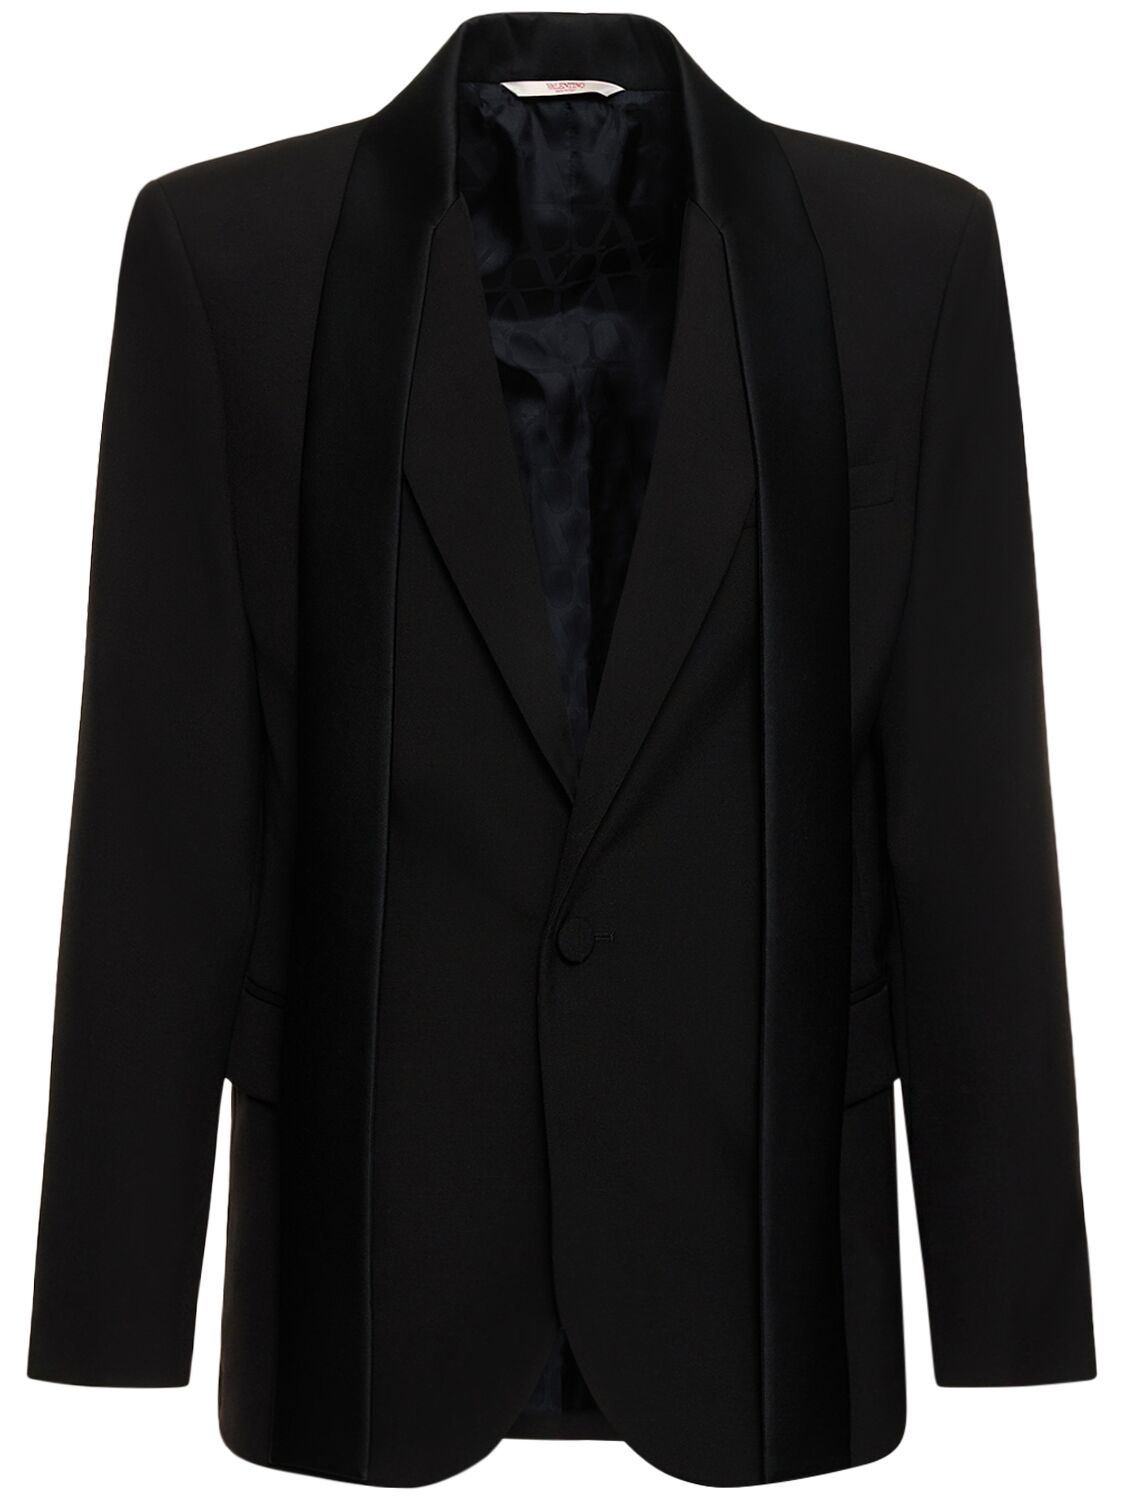 Image of Tailored Wool Tuxedo Jacket